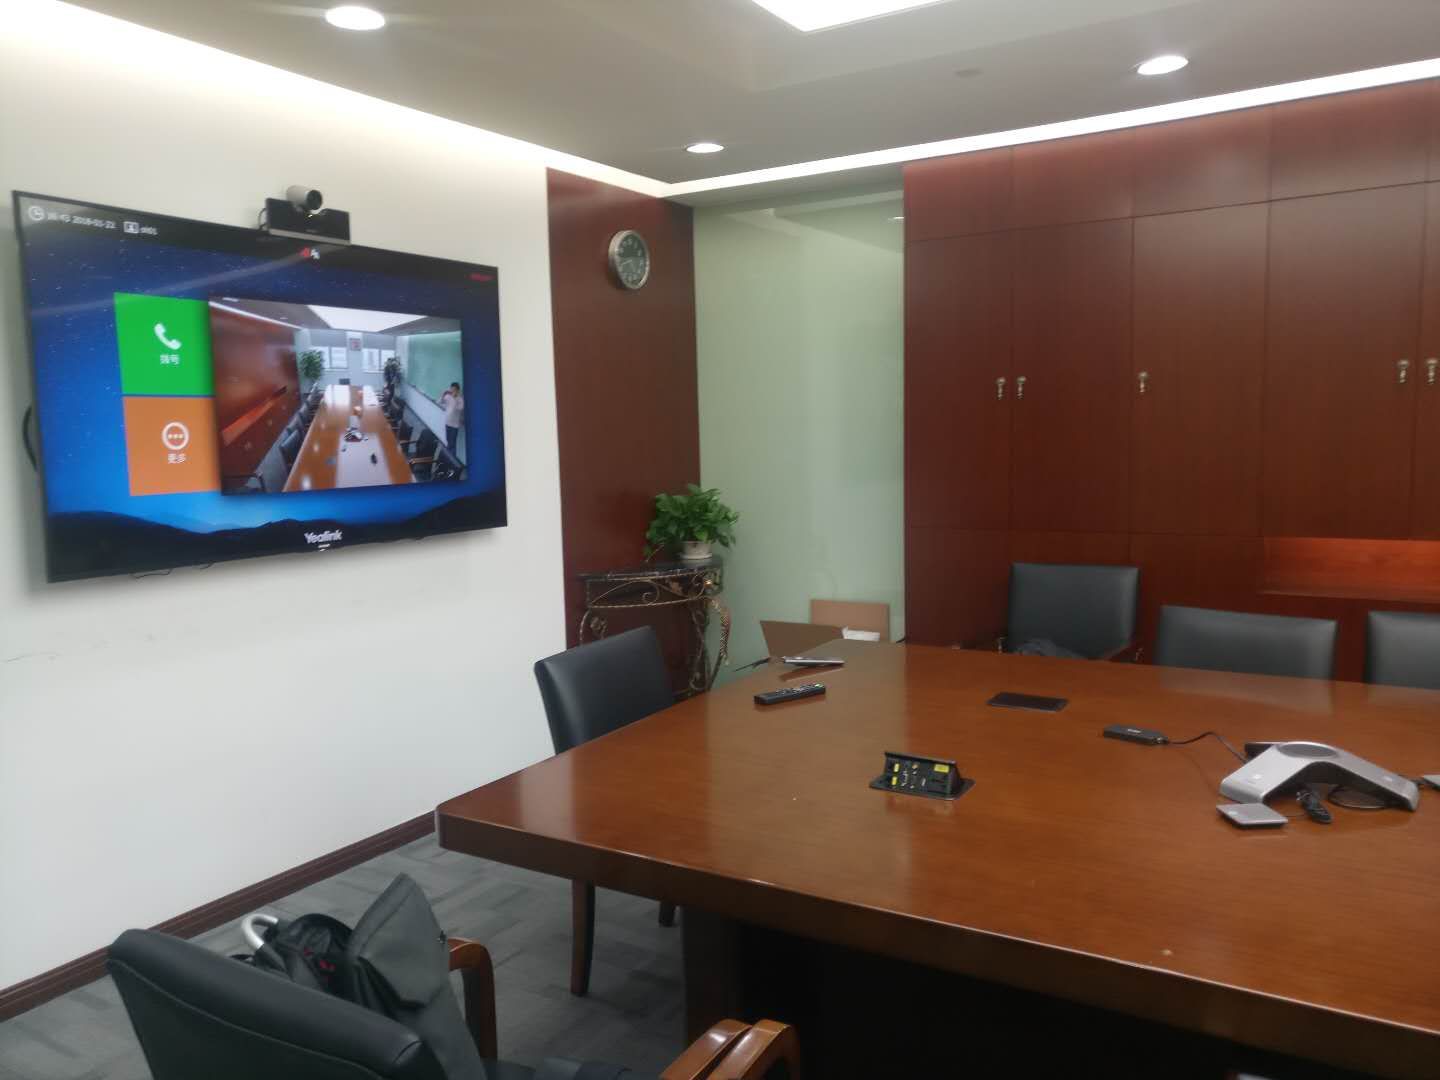 中远海运的会议室安装了亿联视讯